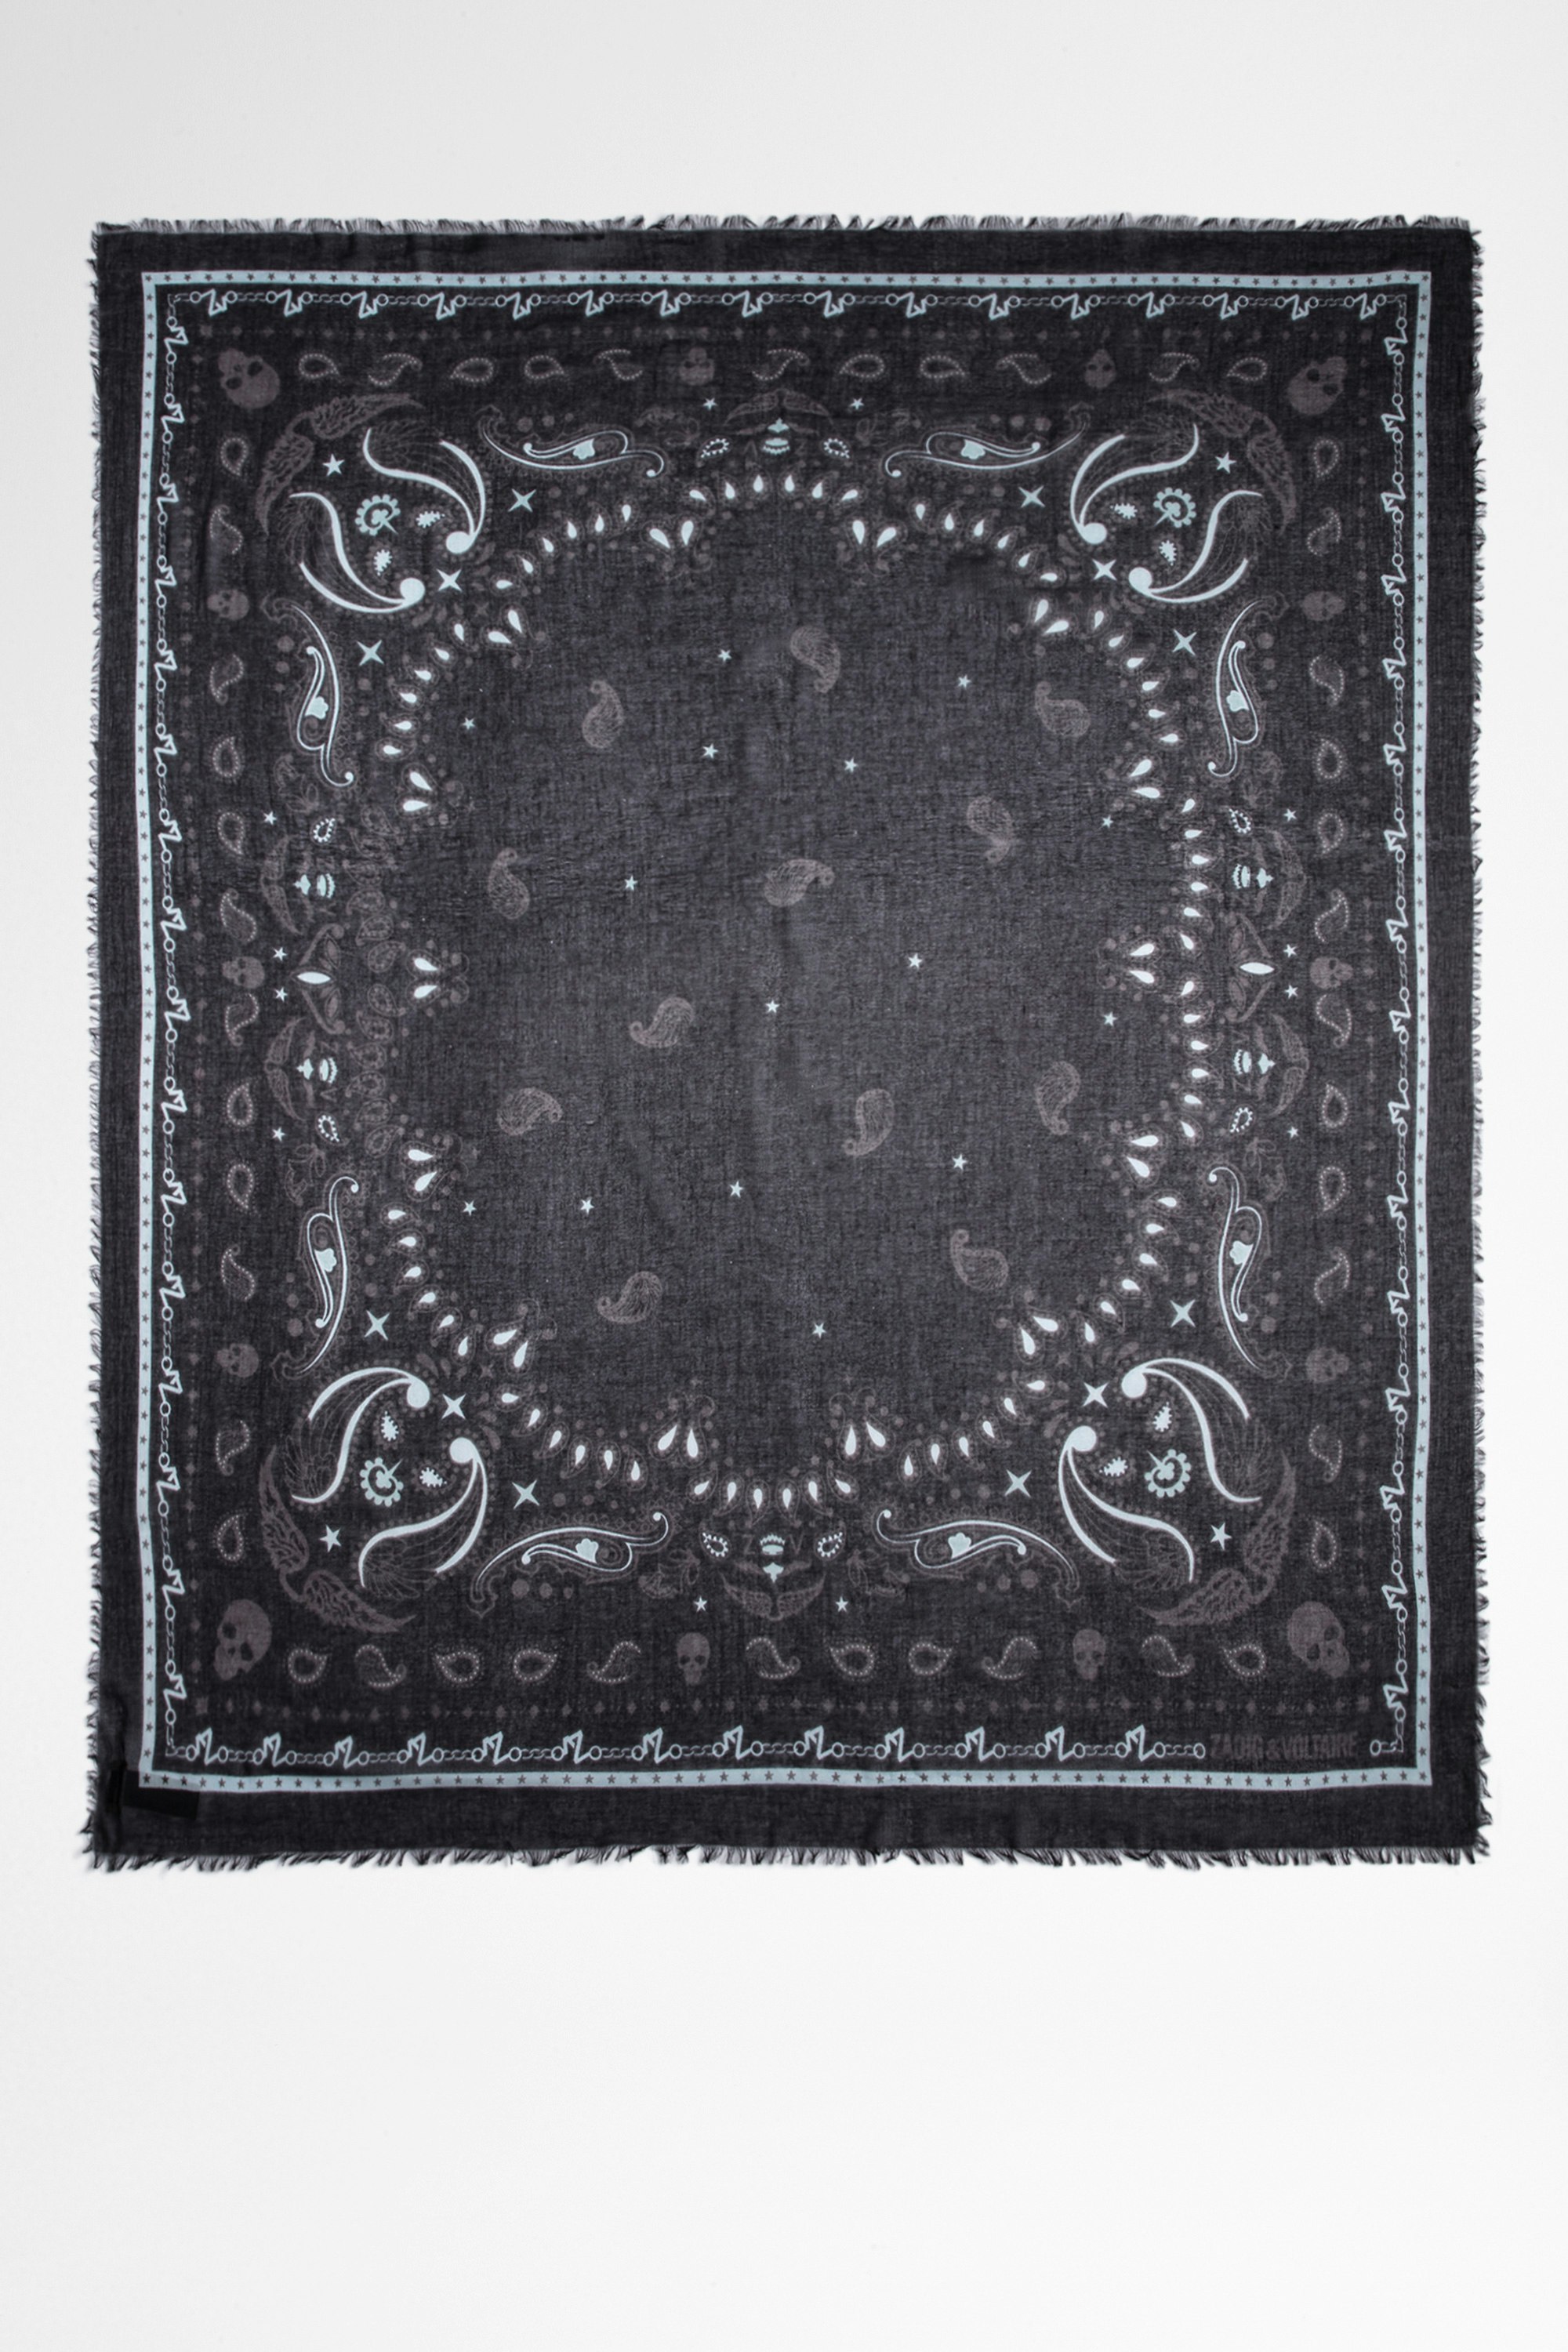 Halstuch Delta Damen-Halstuch aus Baumwolle mit schwarzem Bandana-Print. Dieses Produkt ist nach GOTS zertifiziert und aus Fasern aus biologischem Anbau hergestellt.